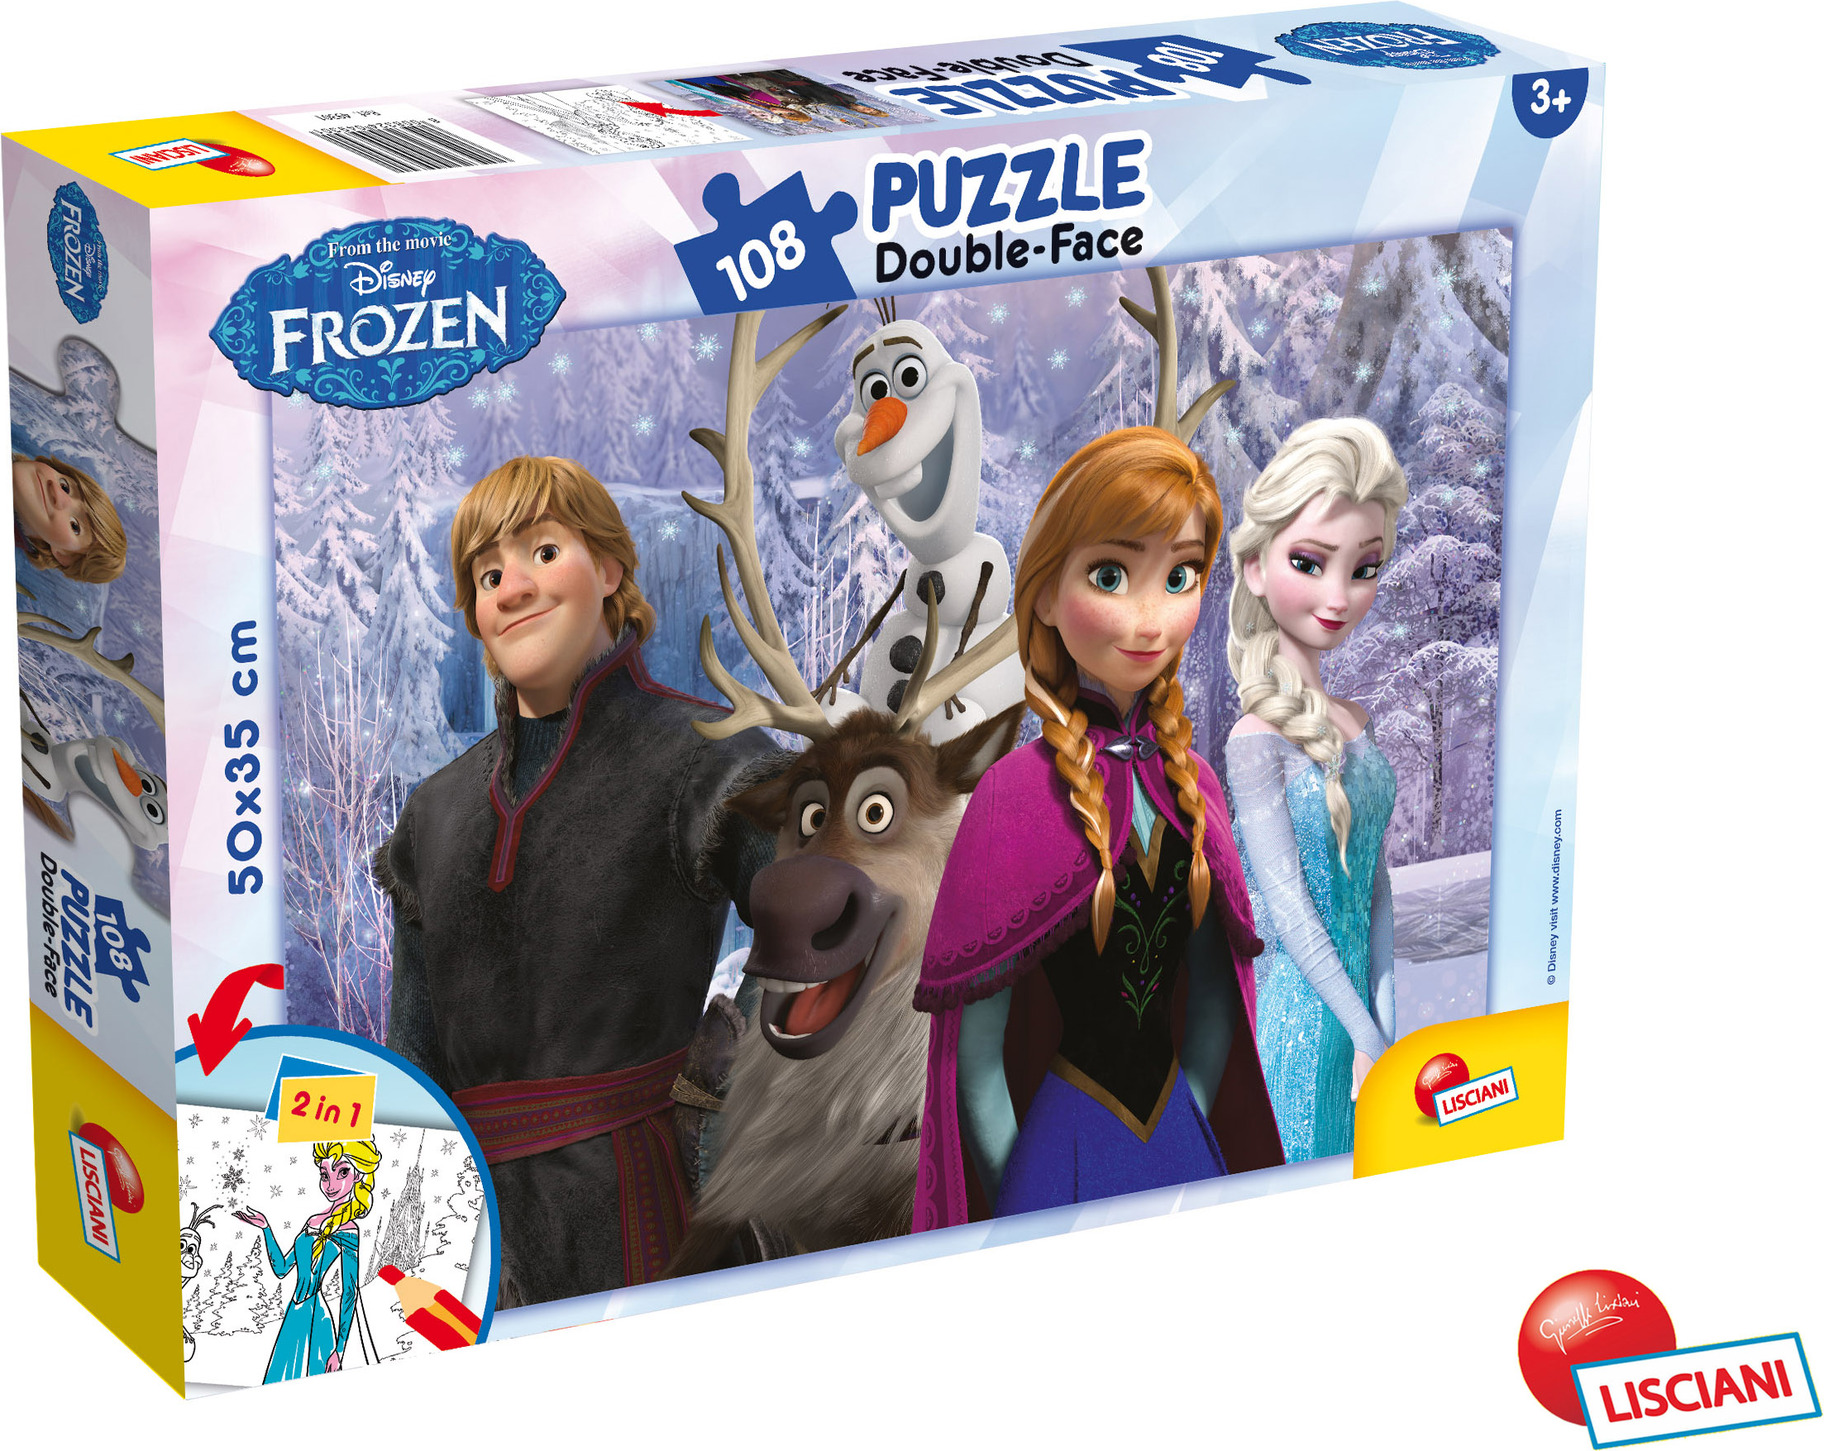 Frozen Puzzle double-face 108 dílů